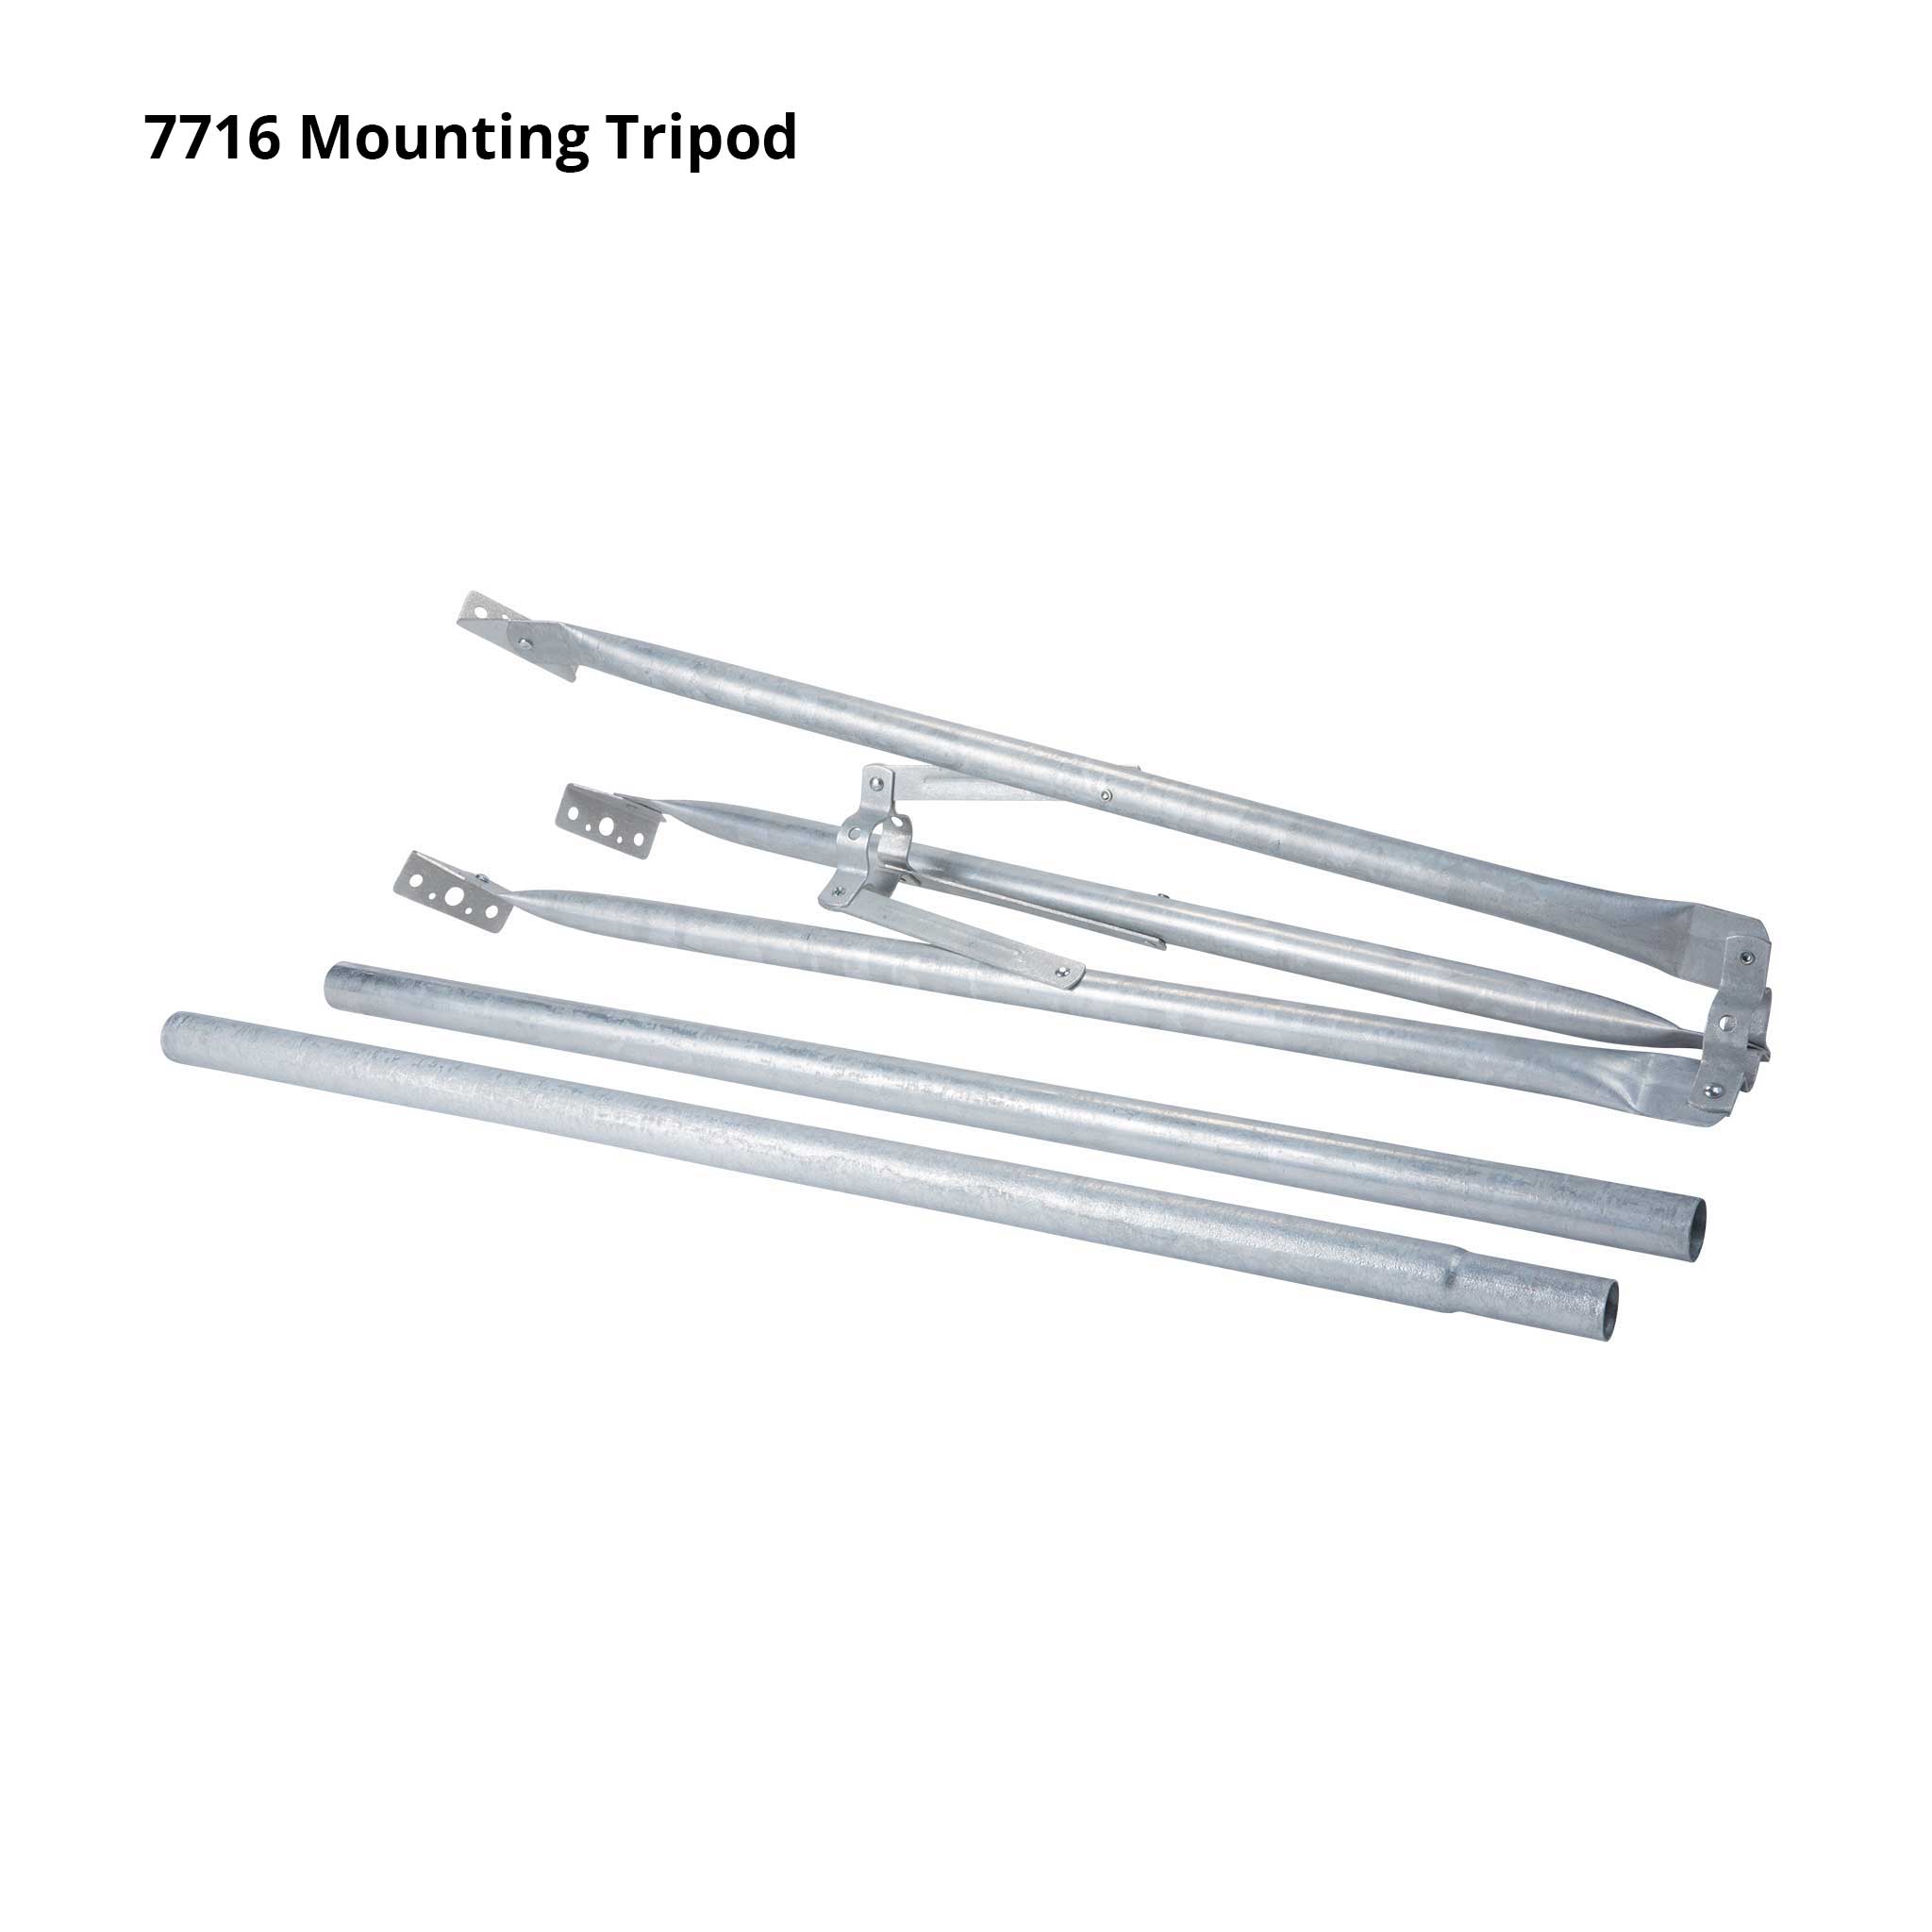 Mounting Tripod - SKU 7716A, 7716